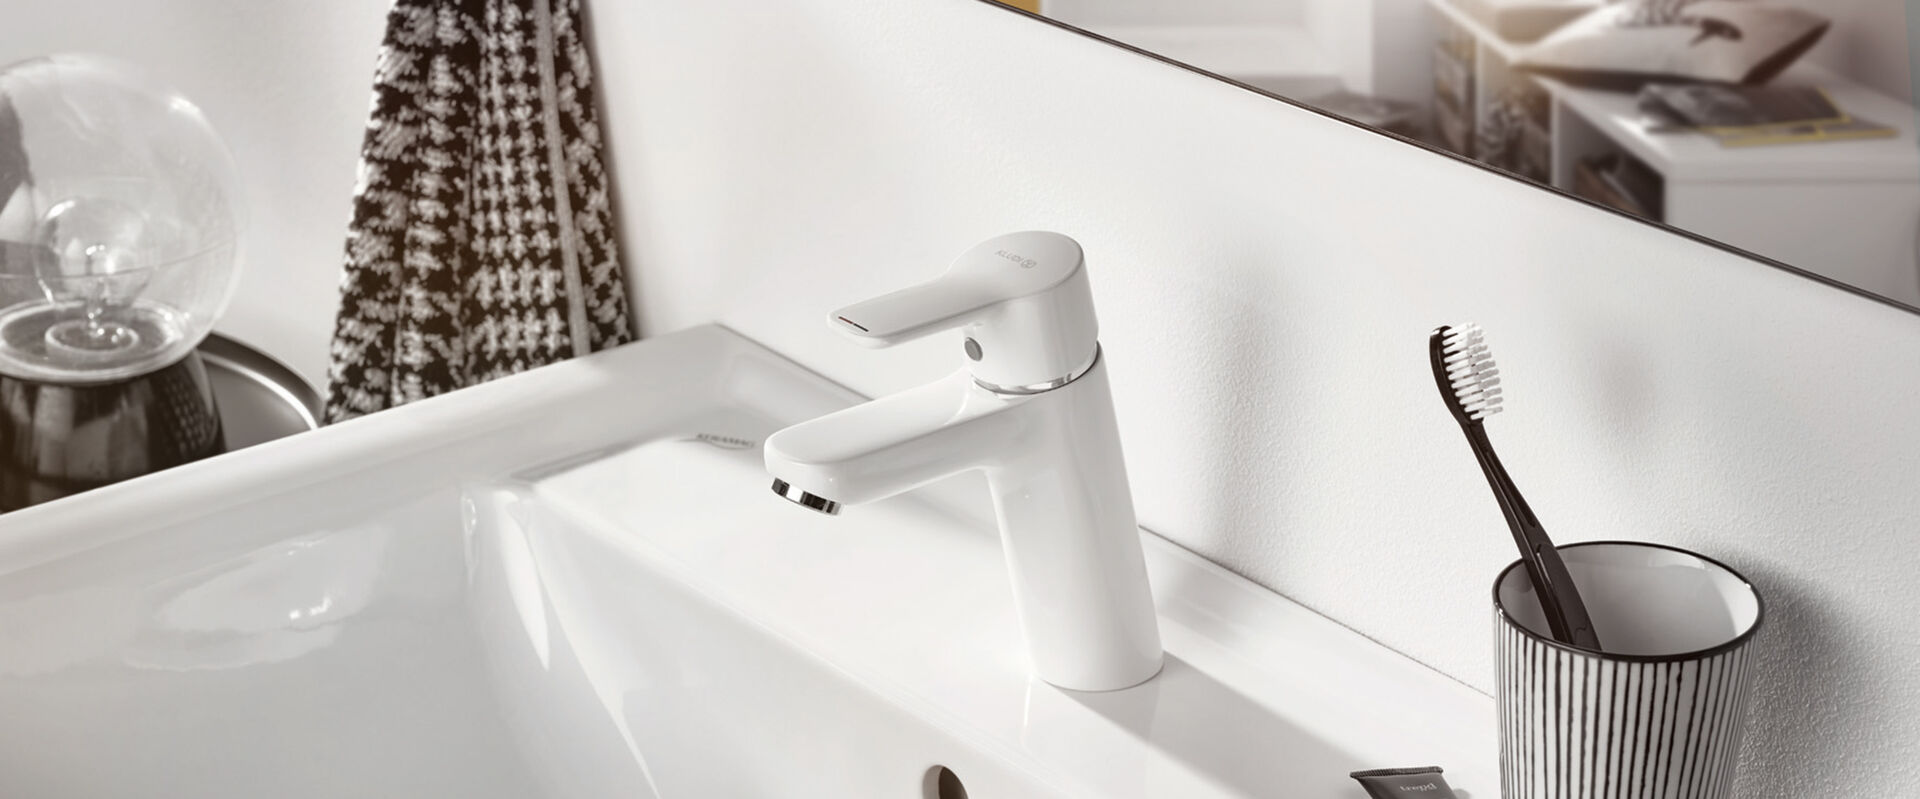 Weißer Wasserhahn Pure Funktion von Kludi. Installiert an einem weißen Waschbecken, auf dessen Rand ein Gefäß mit Zahnbürste steht.